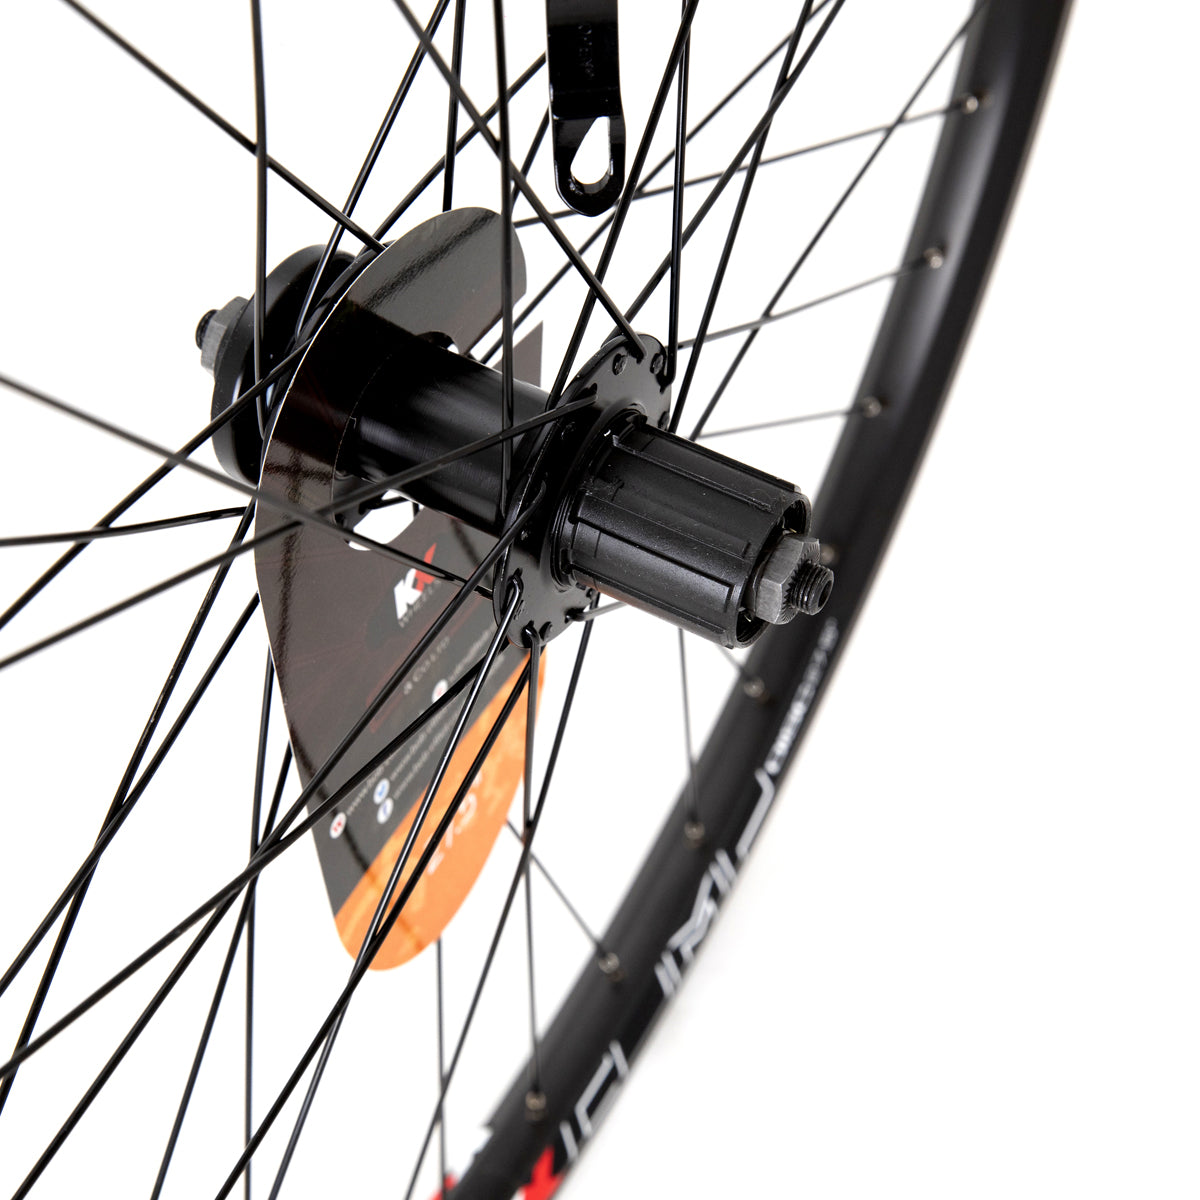 KX Wheels Double Wall QR Disc Cassette 27.5 Inch Rear Bike Wheel Alternate 1